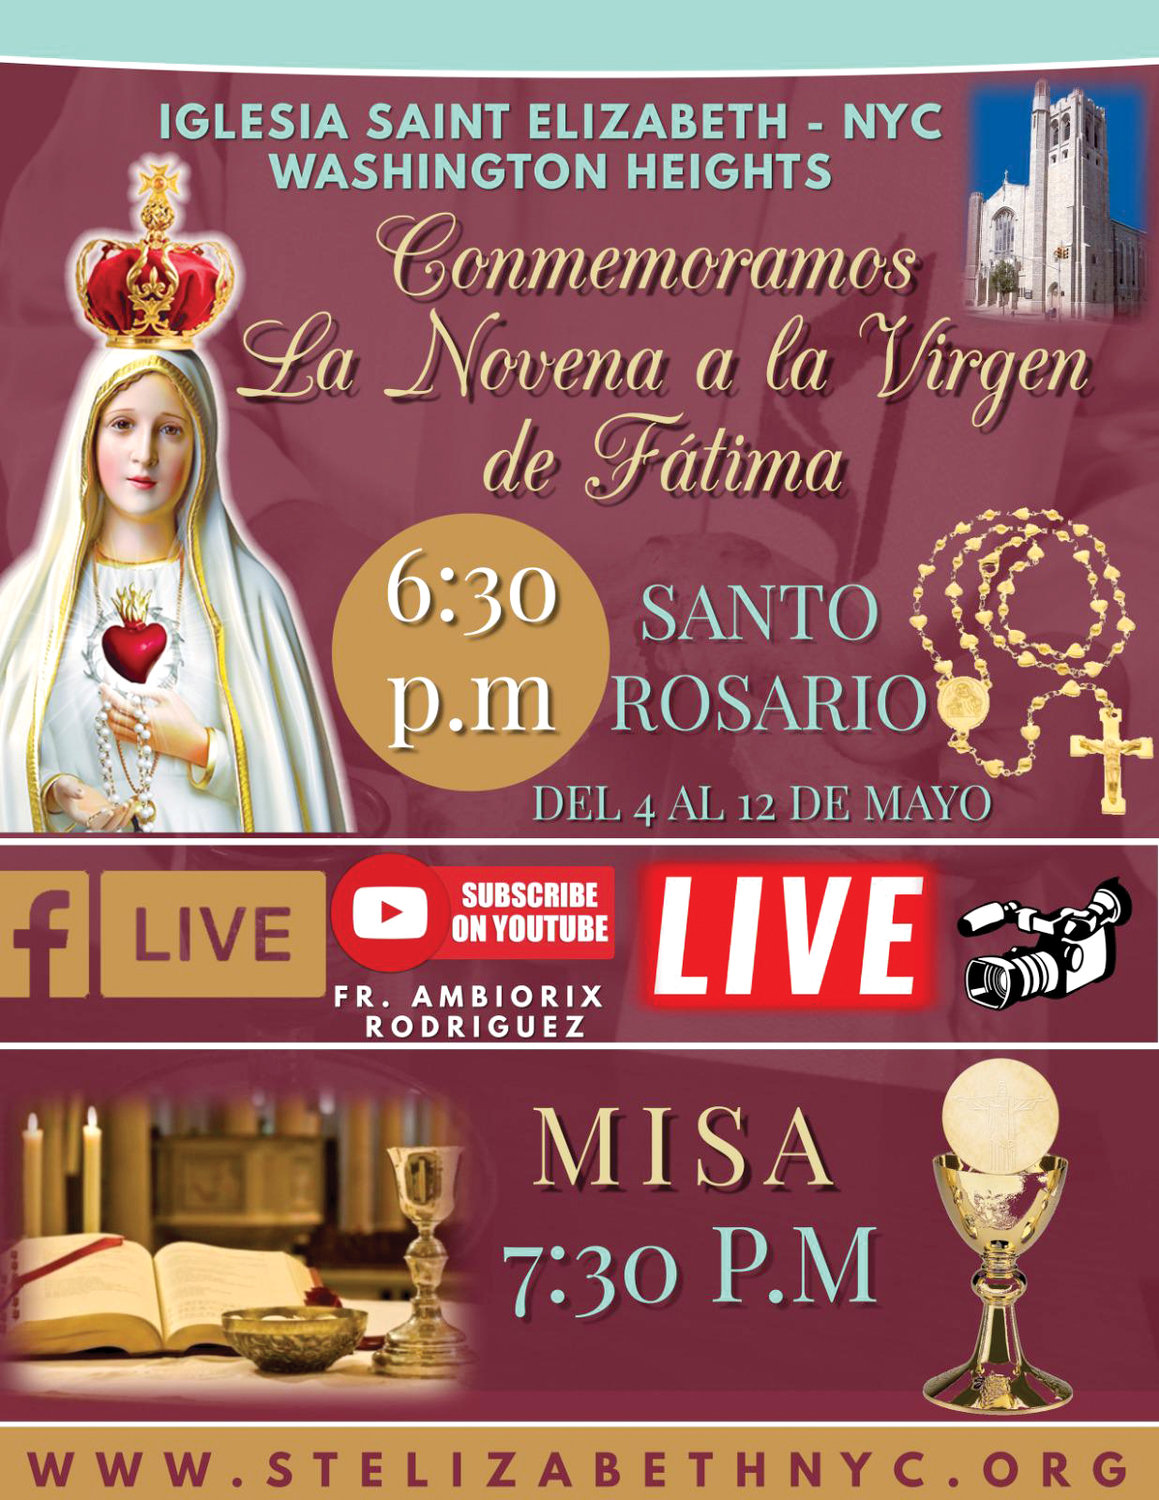 Un recien anuncio sobre una Misa y Rosario, transmitidos en vivo, en Santa Elizabeth.